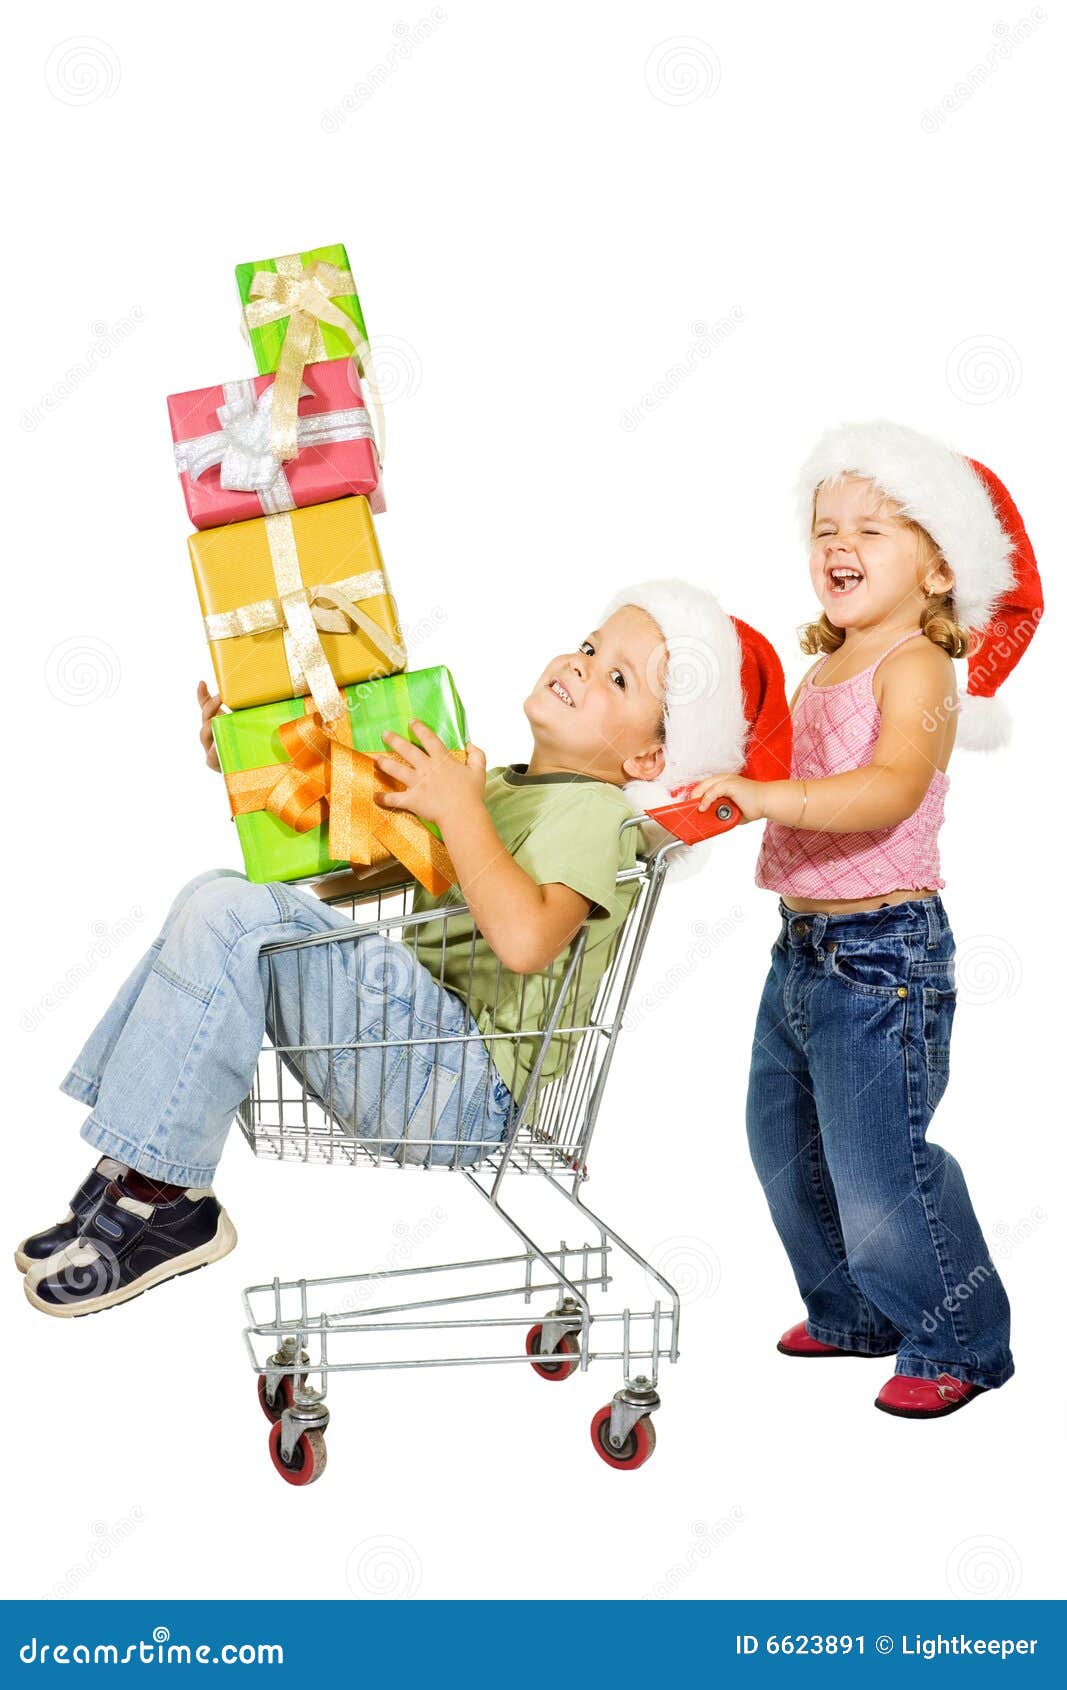 Shopping For Kids